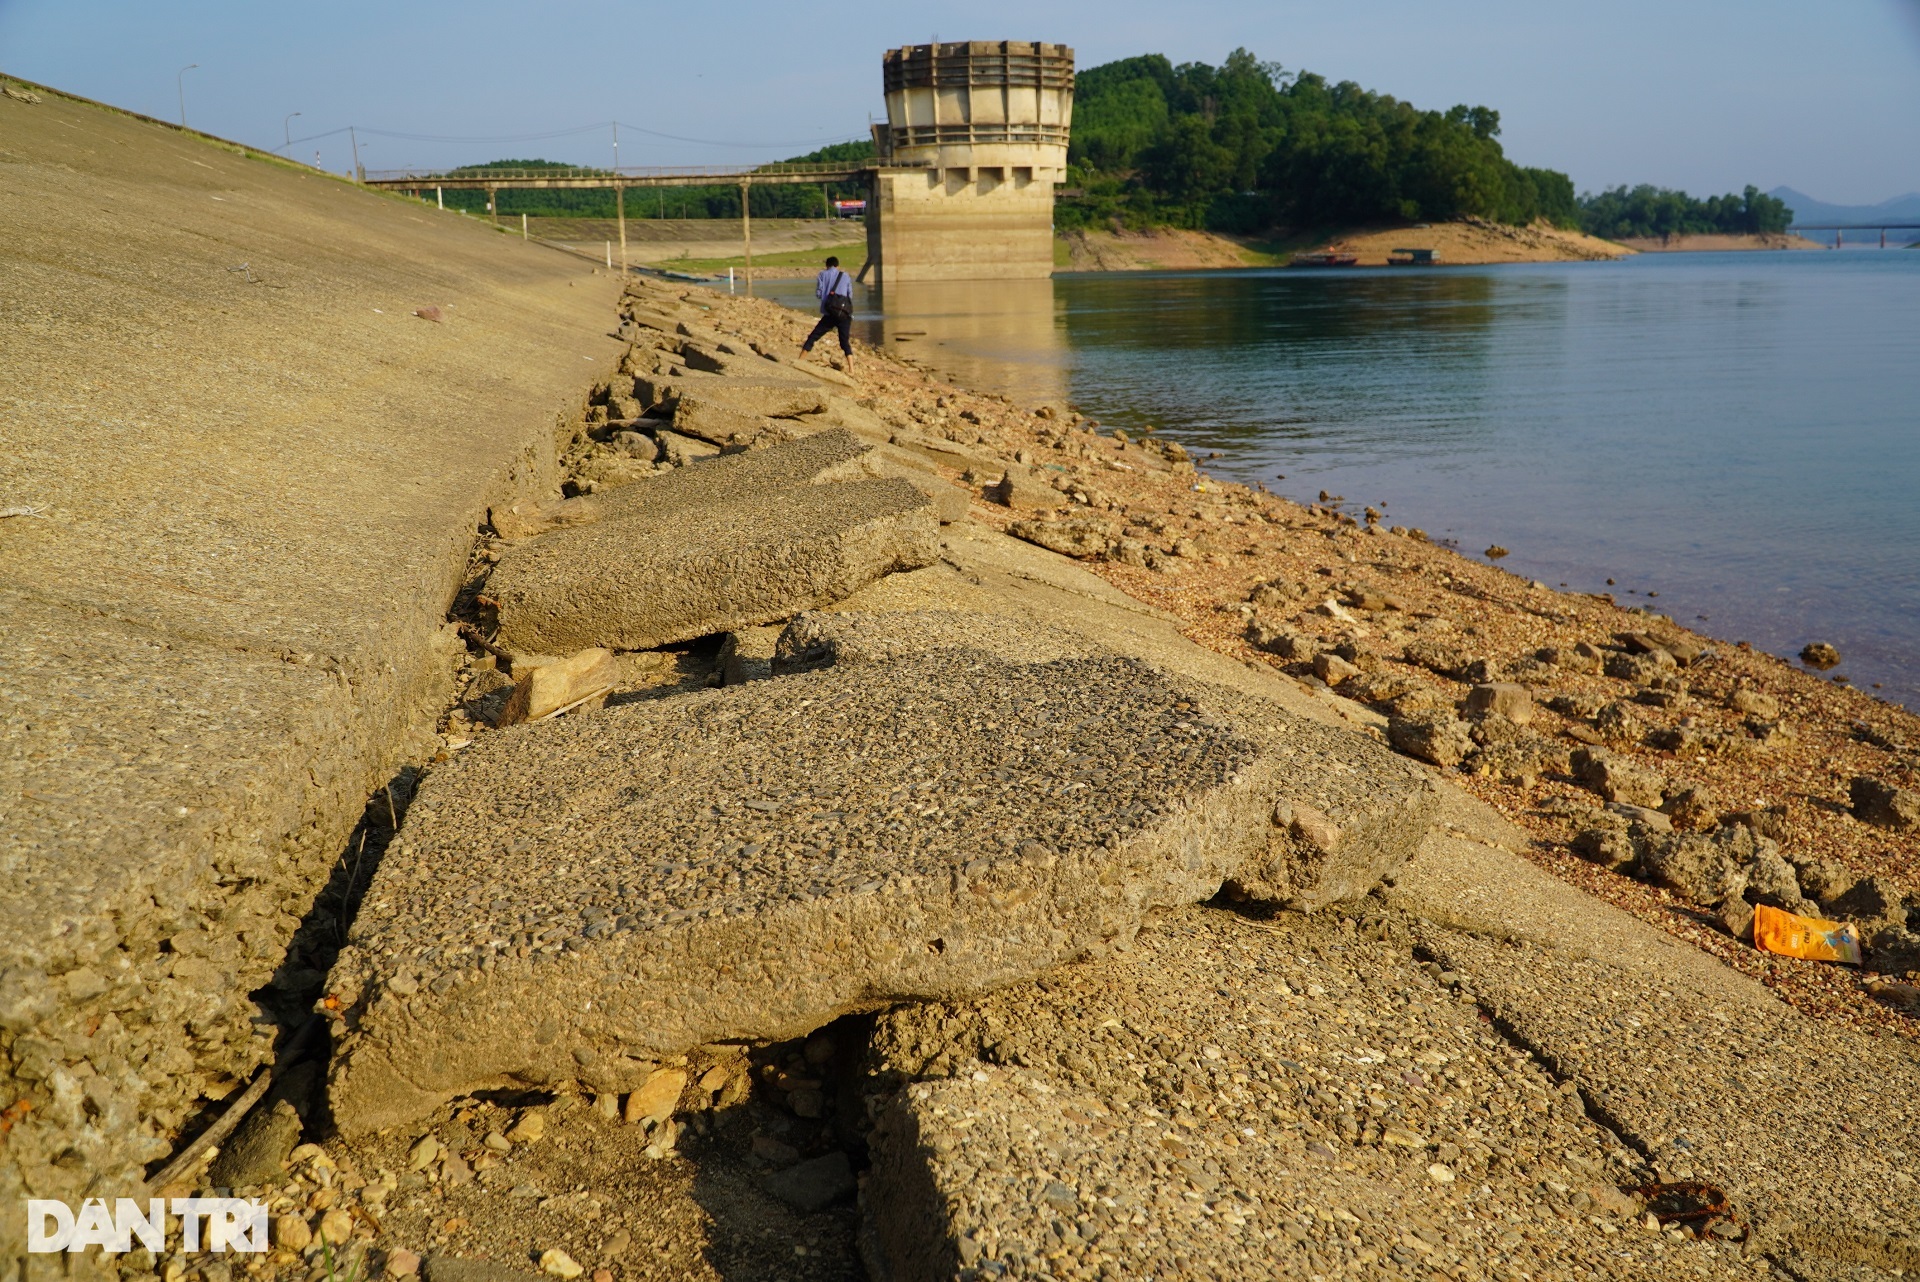 Hồ chứa lớn nhất Hà Tĩnh xuống cấp sau gần nửa thế kỷ vận hành - 1